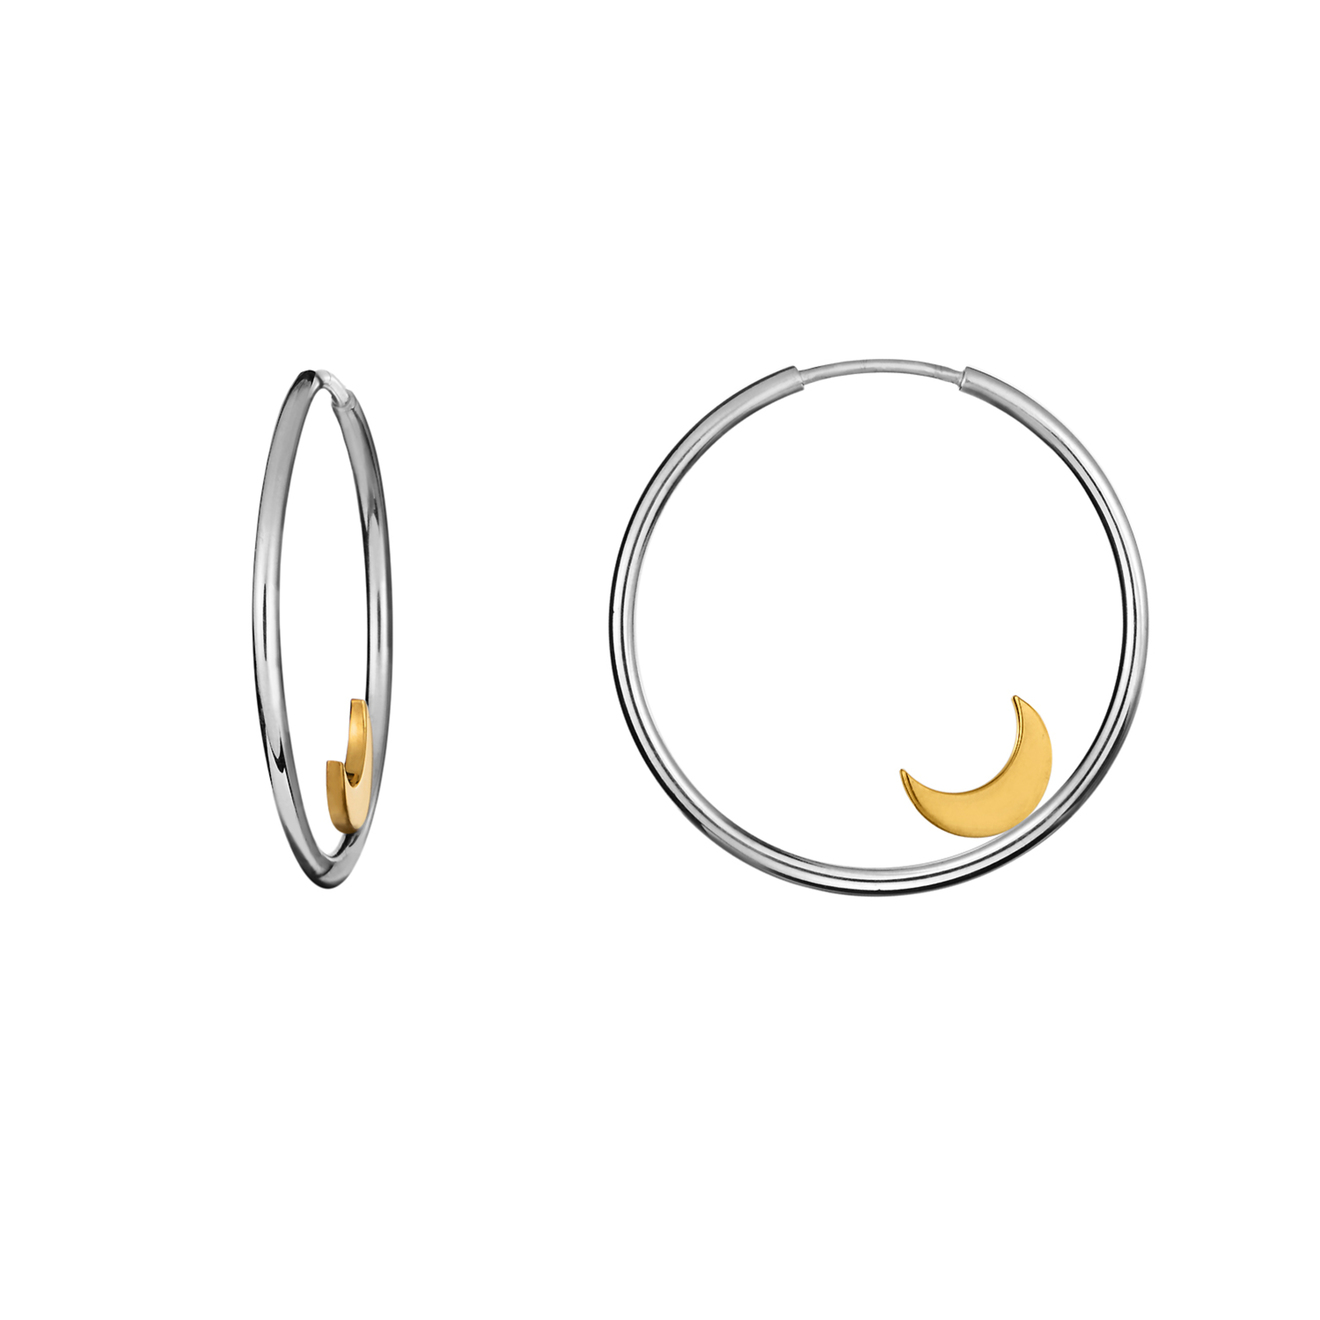 LUSIN Jewelry Серьги-кольца из серебра с золотистым полумесяцем Moon Hoops lusin jewelry колье old moon necklace на тонкой цепочке из серебра